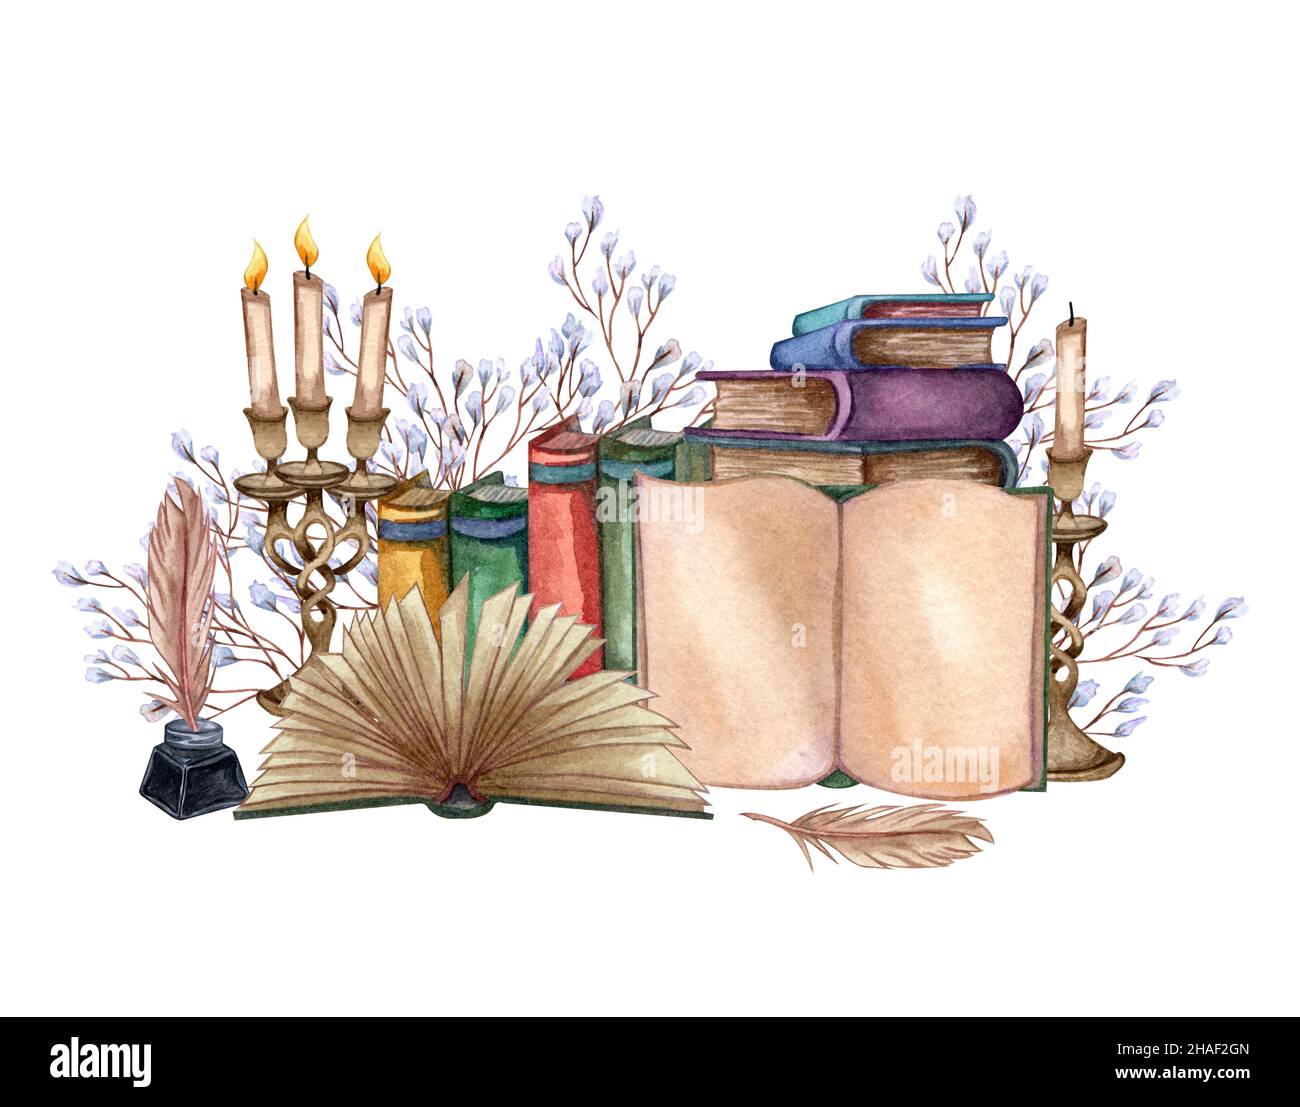 Handgezeichnete Aquarellillustration ein Stapel alter Bücher, Tintenflasche, Tintenfeder, Blumenzweig, offenes Buch, Seltenes Papier, Kerzen. Alte und seltene Bücher Stockfoto